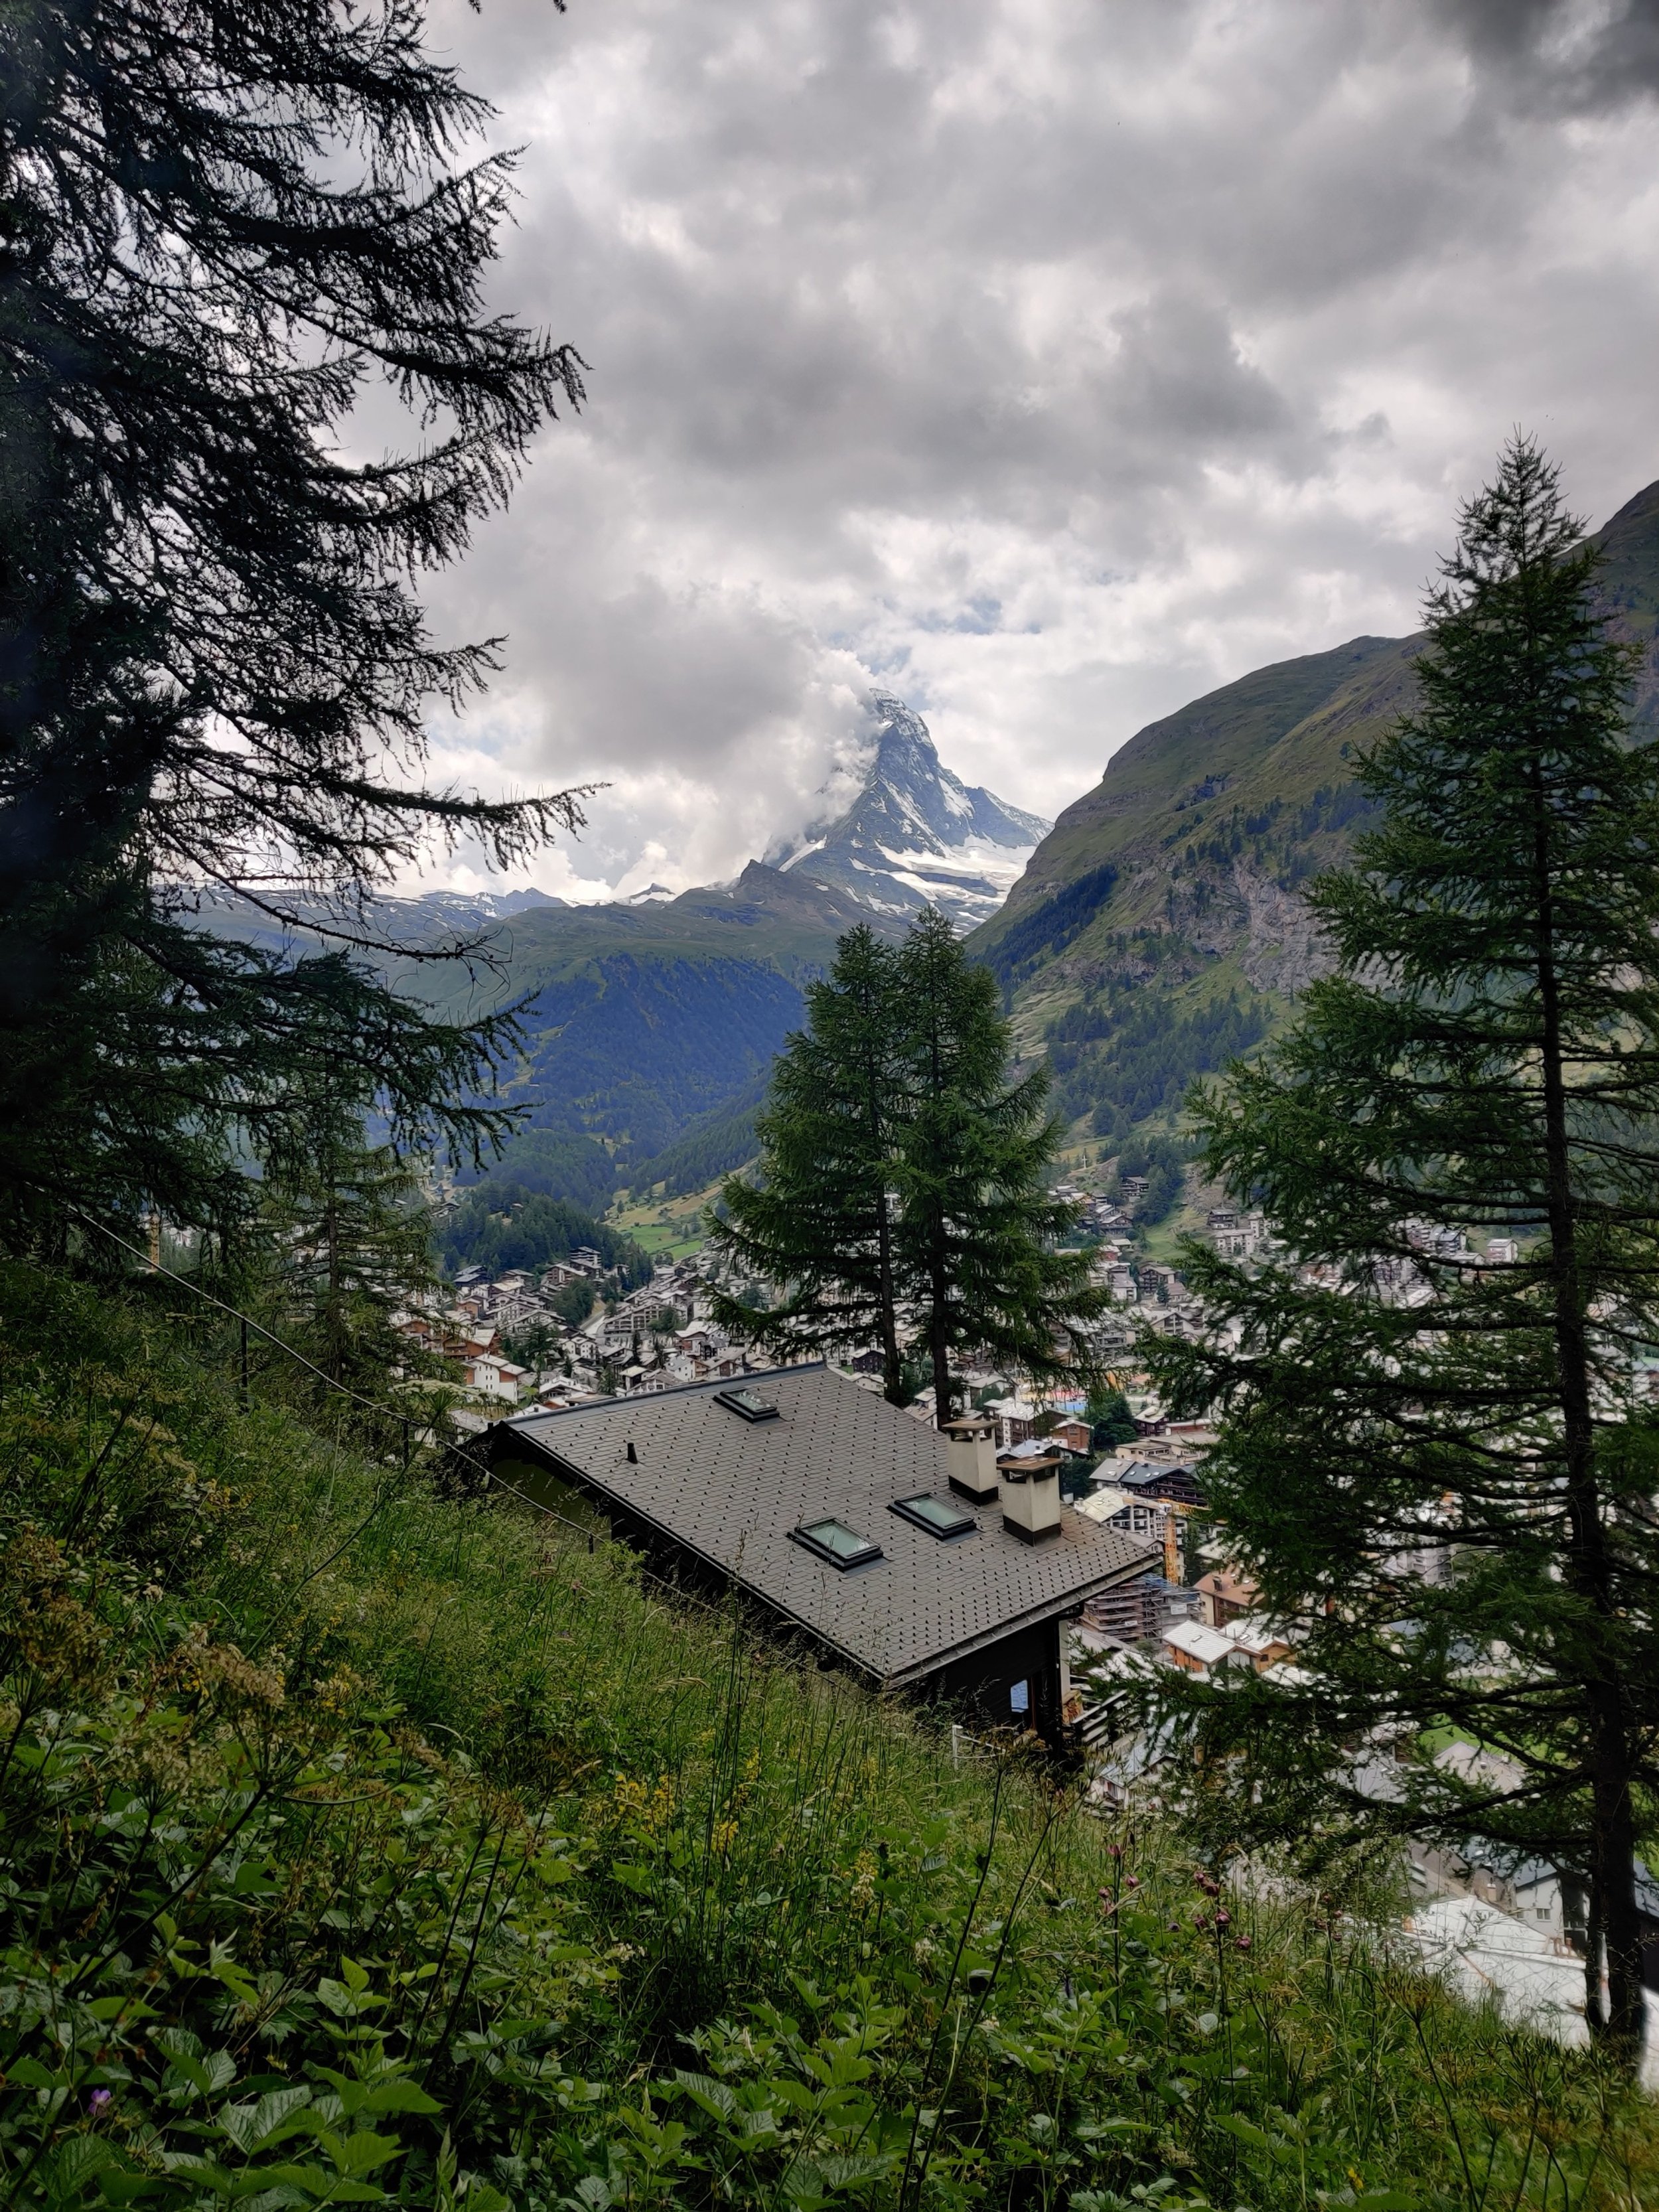 Reaching Zermatt with the Matterhorn still visible